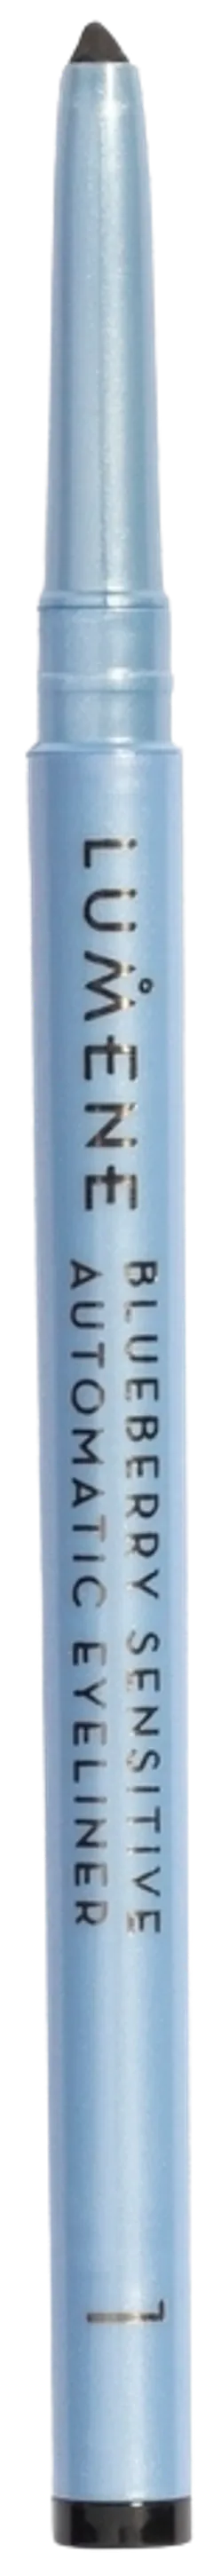 Lumene Blueberry Sensitive silmänrajauskynä 1 musta 0,35g - 2